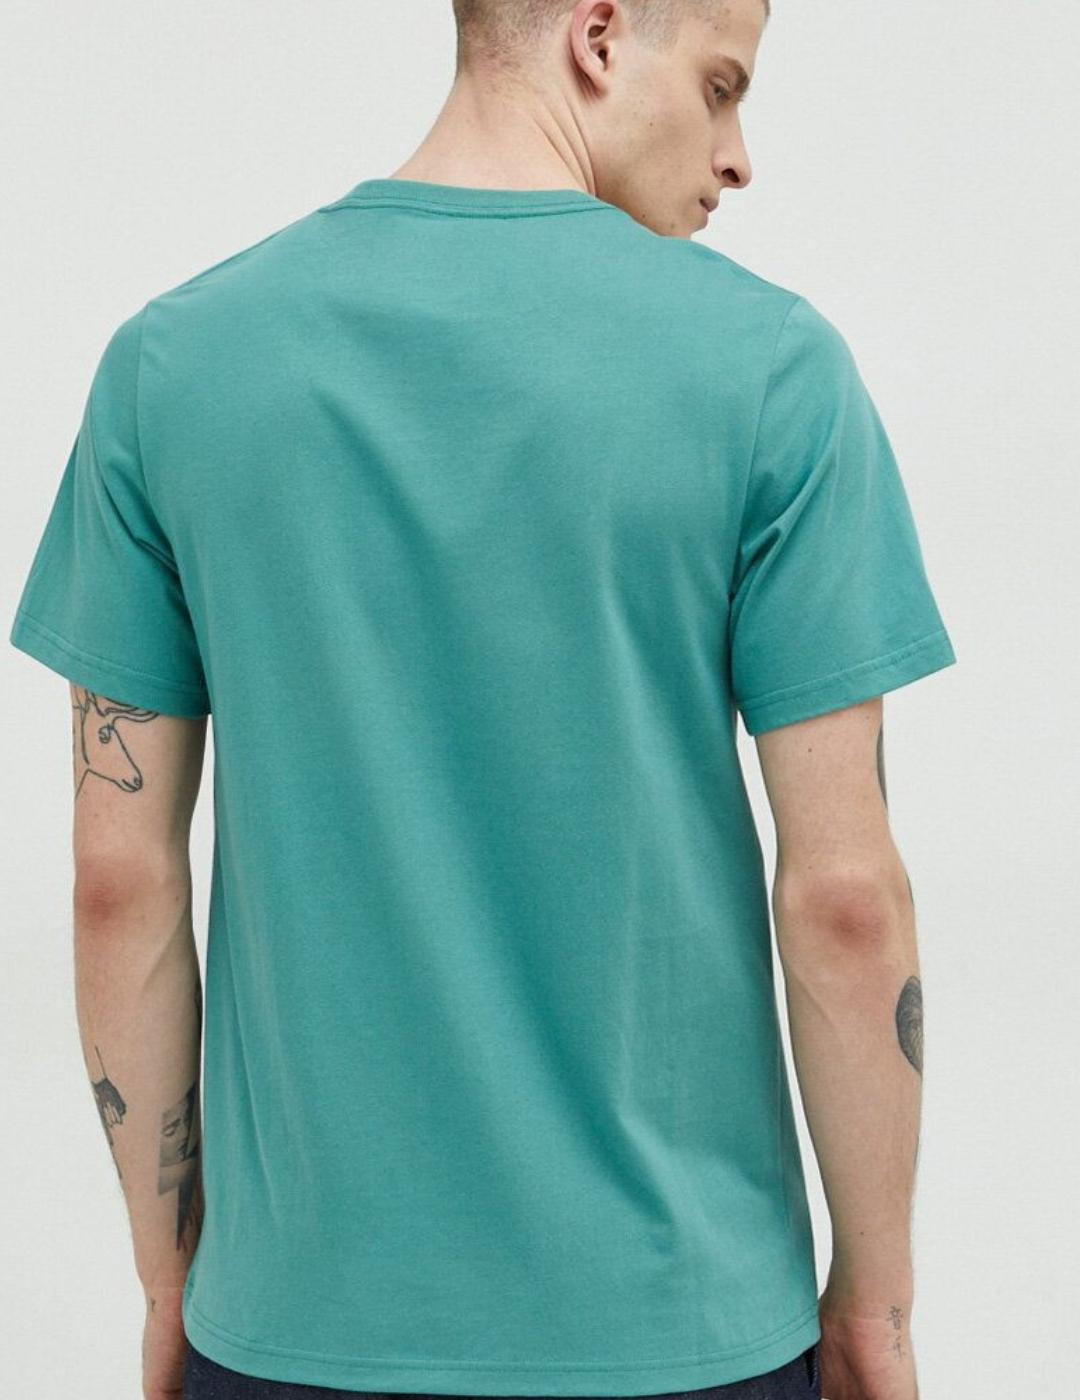 Camiseta Converse basica turquesa para hombre